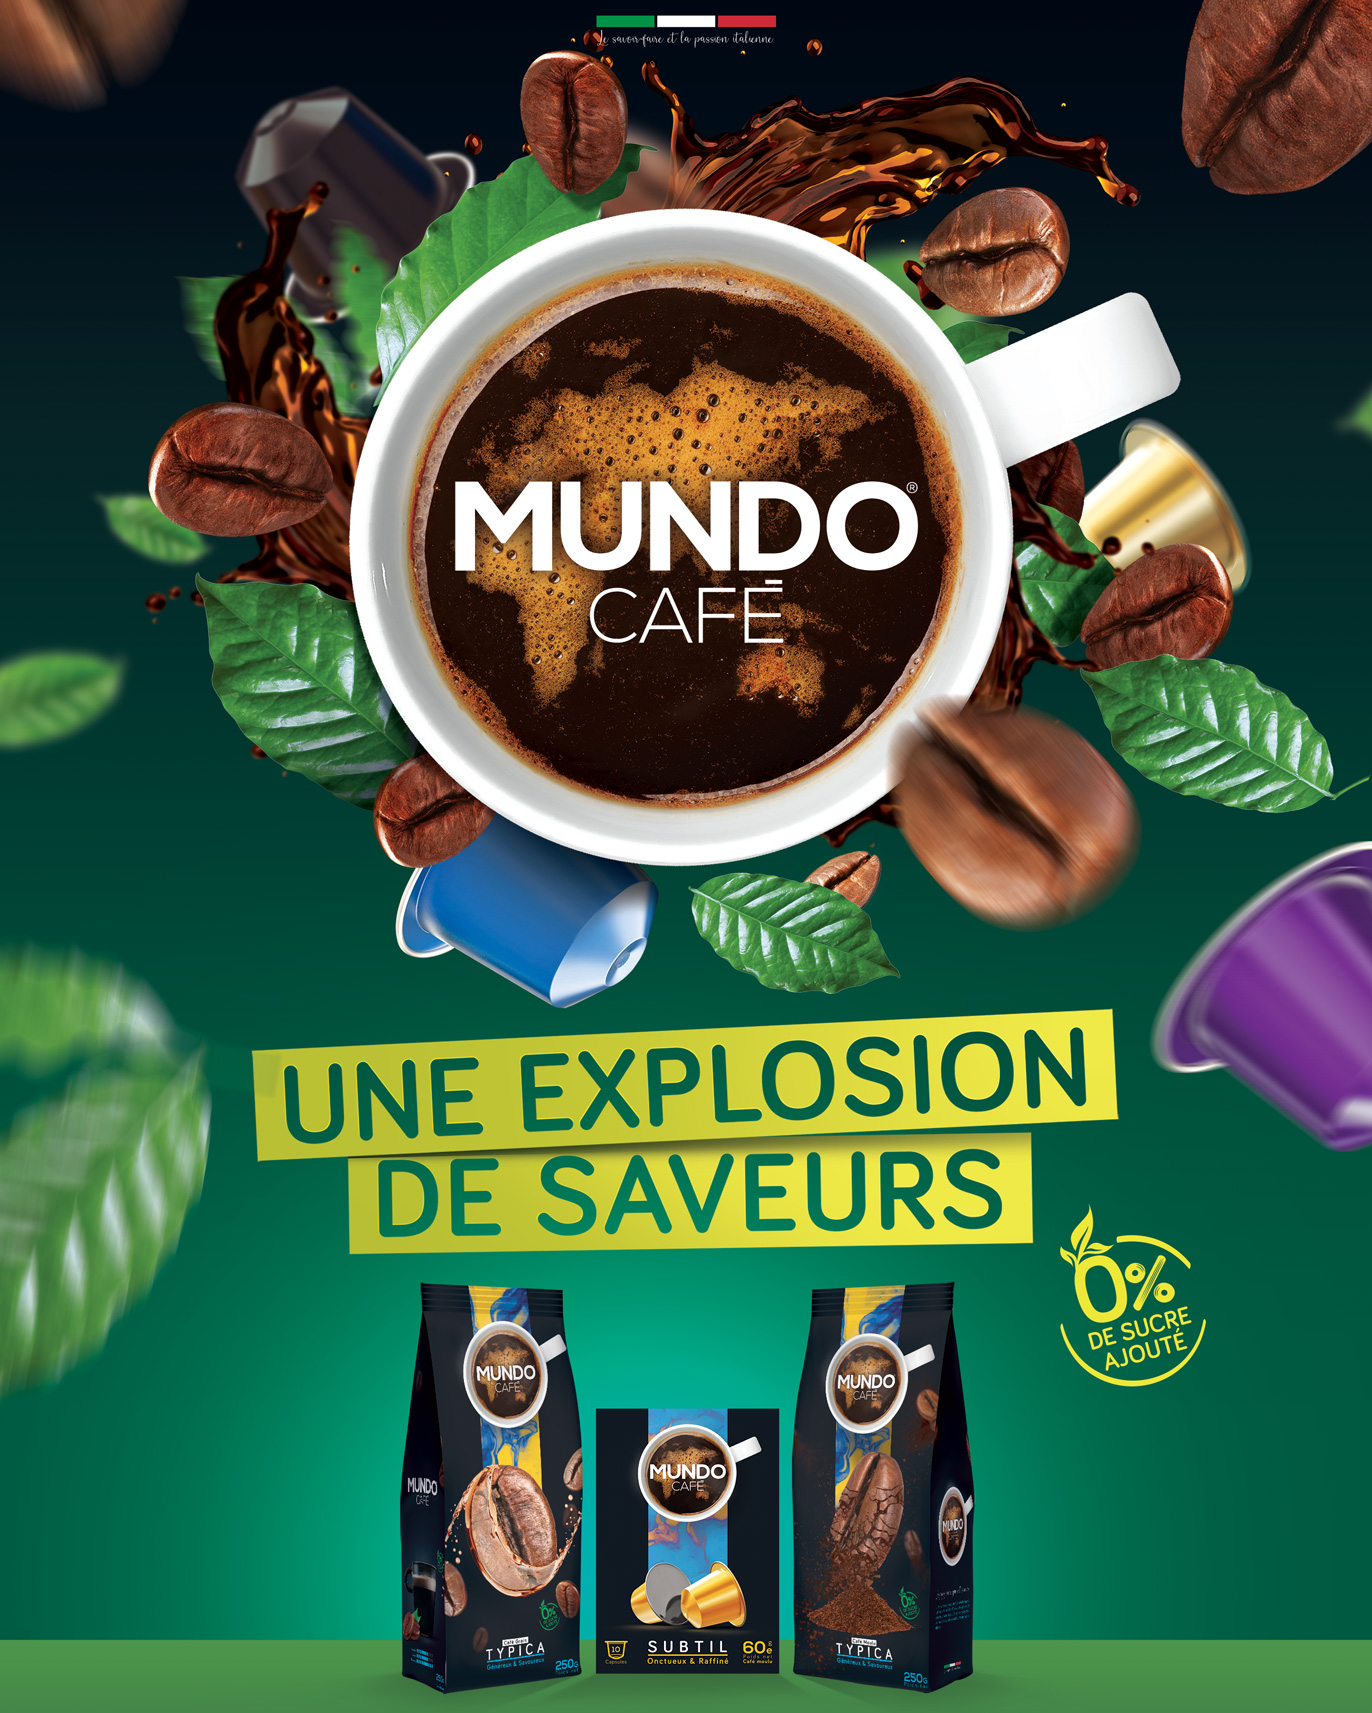 Image de campagne Mundo Café